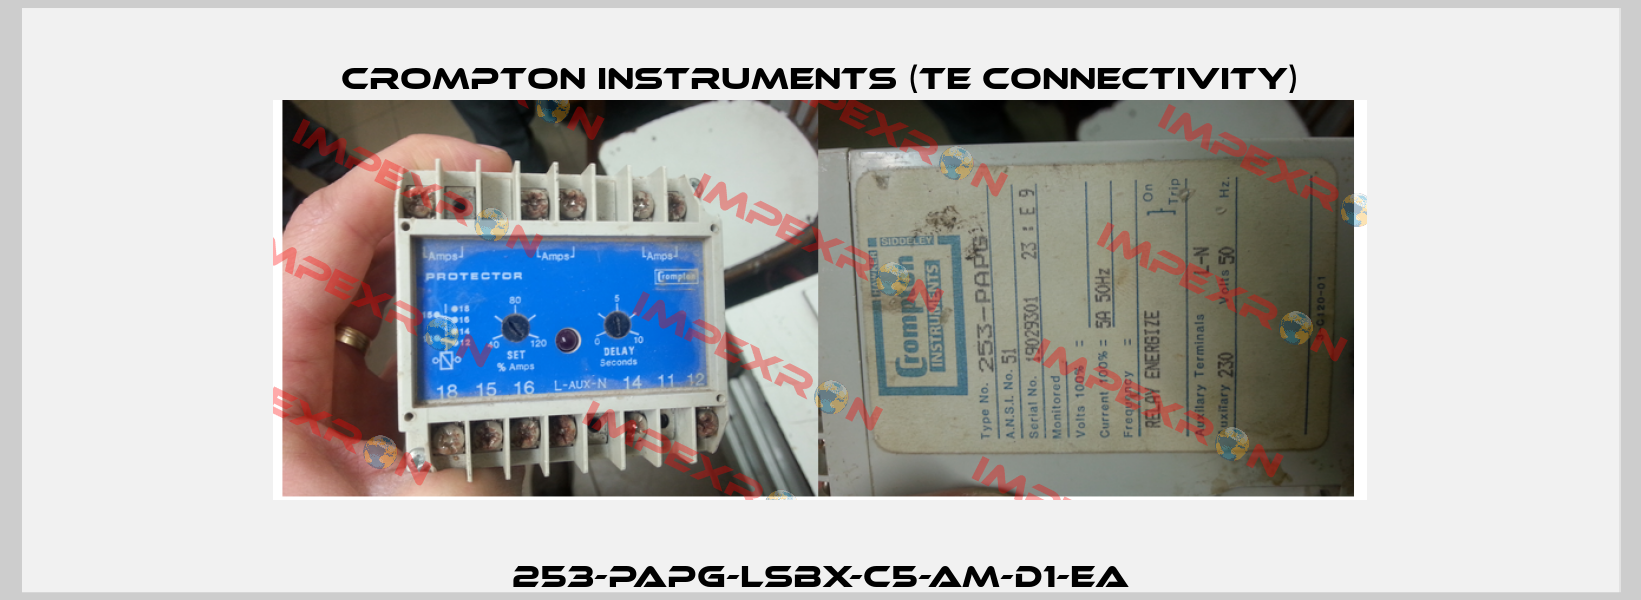 253-PAPG-LSBX-C5-AM-D1-EA CROMPTON INSTRUMENTS (TE Connectivity)